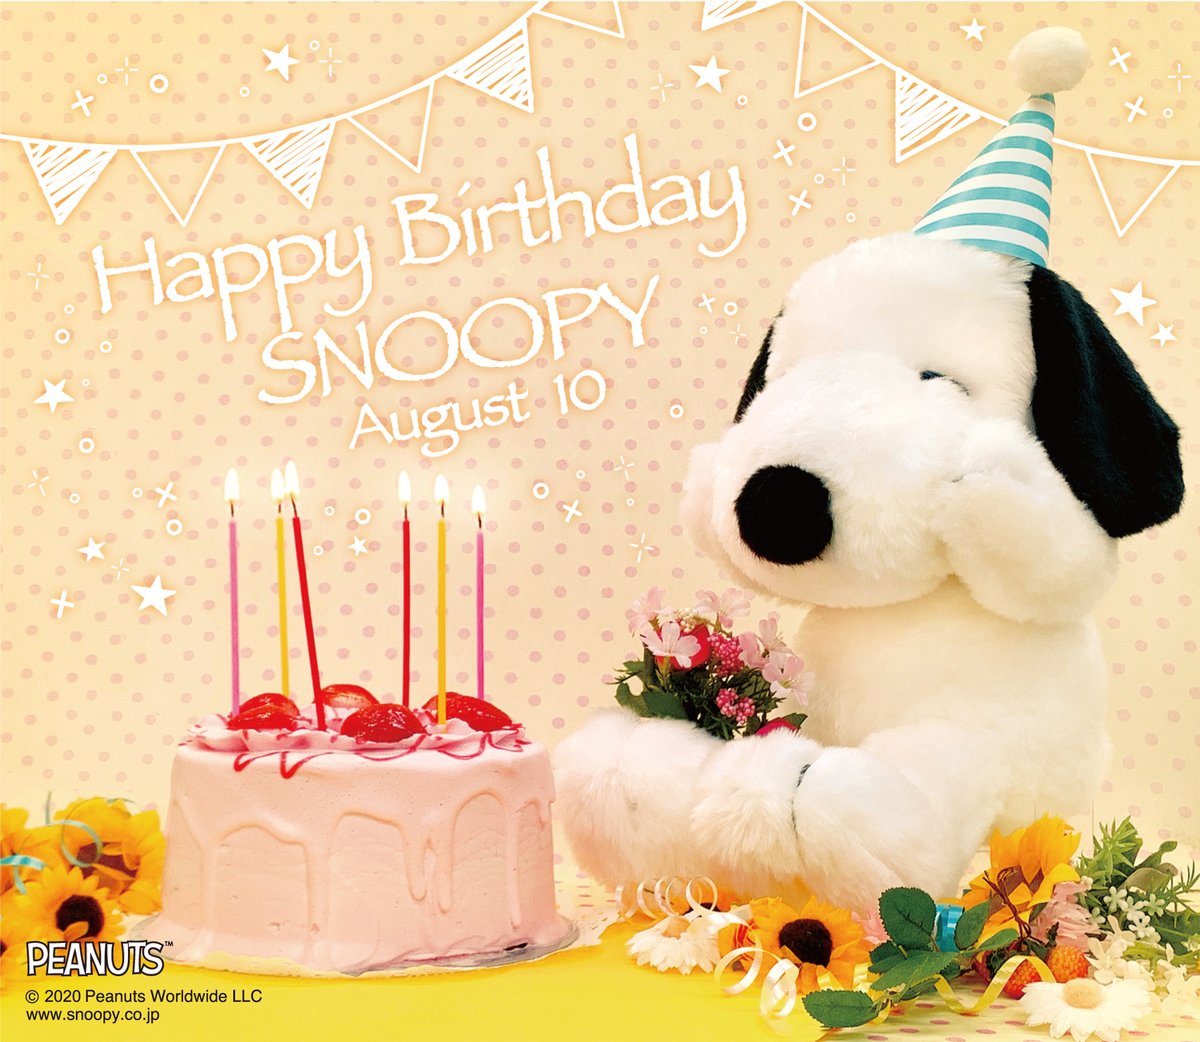 公式 株式会社吉徳 Pa Twitter 8月10日は世界的に有名なビーグル犬 スヌーピーのお誕生日です 弊社の日本製スヌーピー にも 大きないちごのシフォンケーキをプレゼント お誕生日おめでとうございます スヌーピー ピーナッツ Hbdスヌーピー Snoopy Peanuts